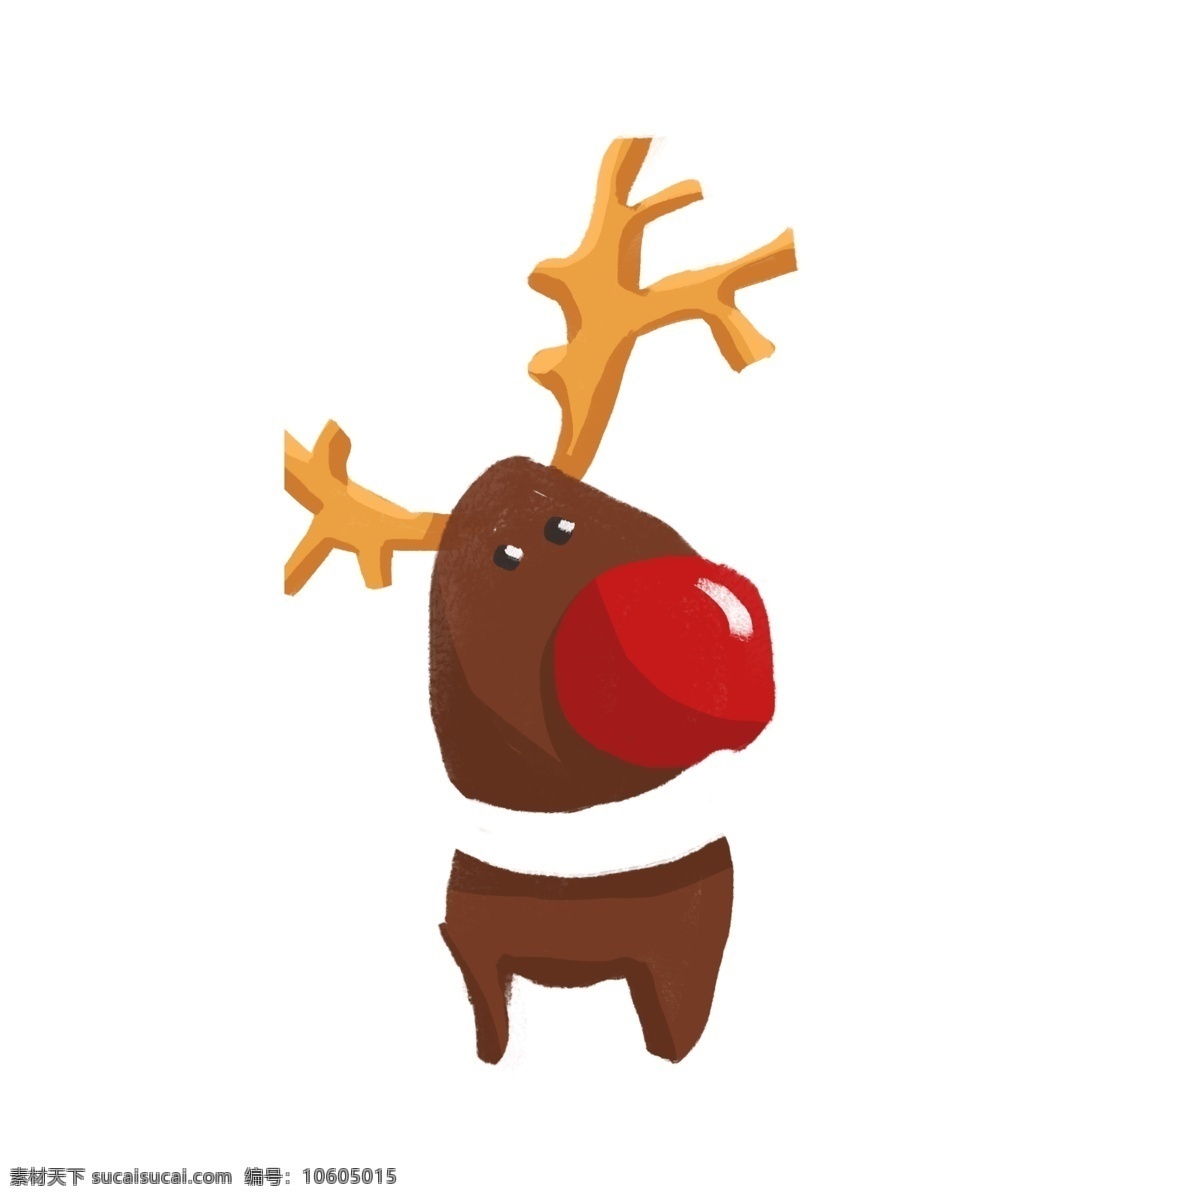 卡通 可爱 动物 驯鹿 插画 圣诞节元素